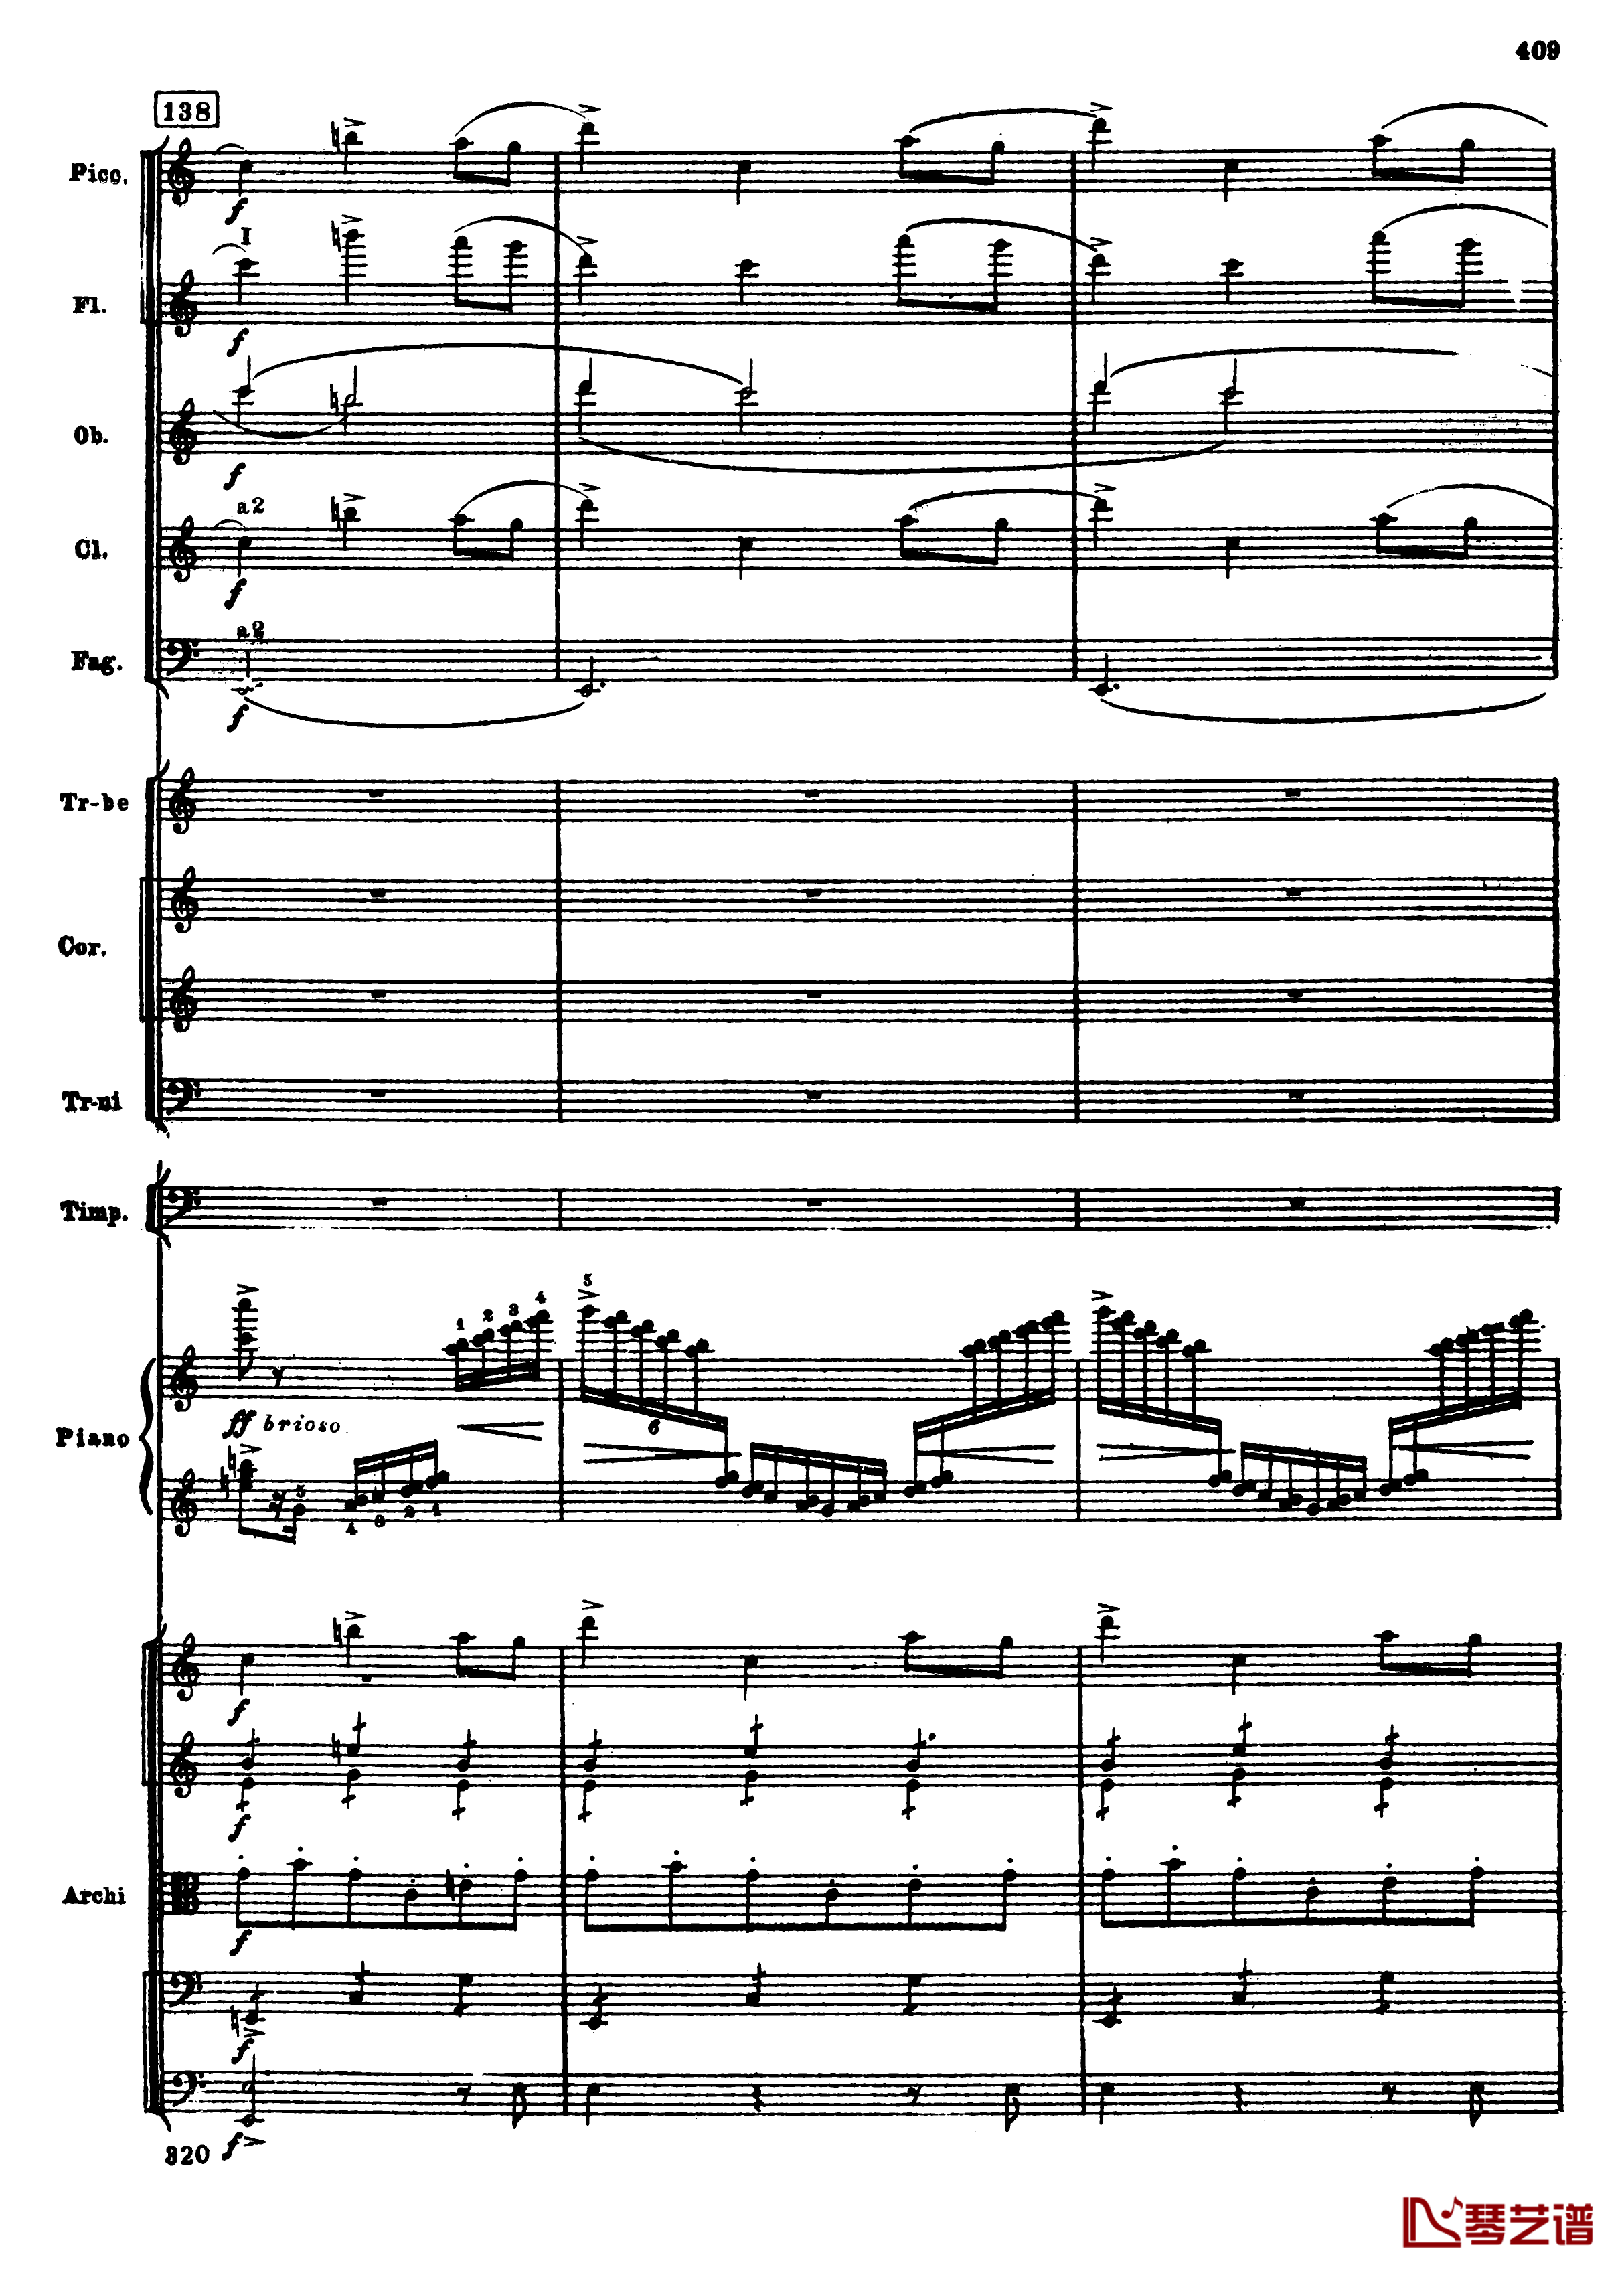 普罗科菲耶夫第三钢琴协奏曲钢琴谱-总谱-普罗科非耶夫141